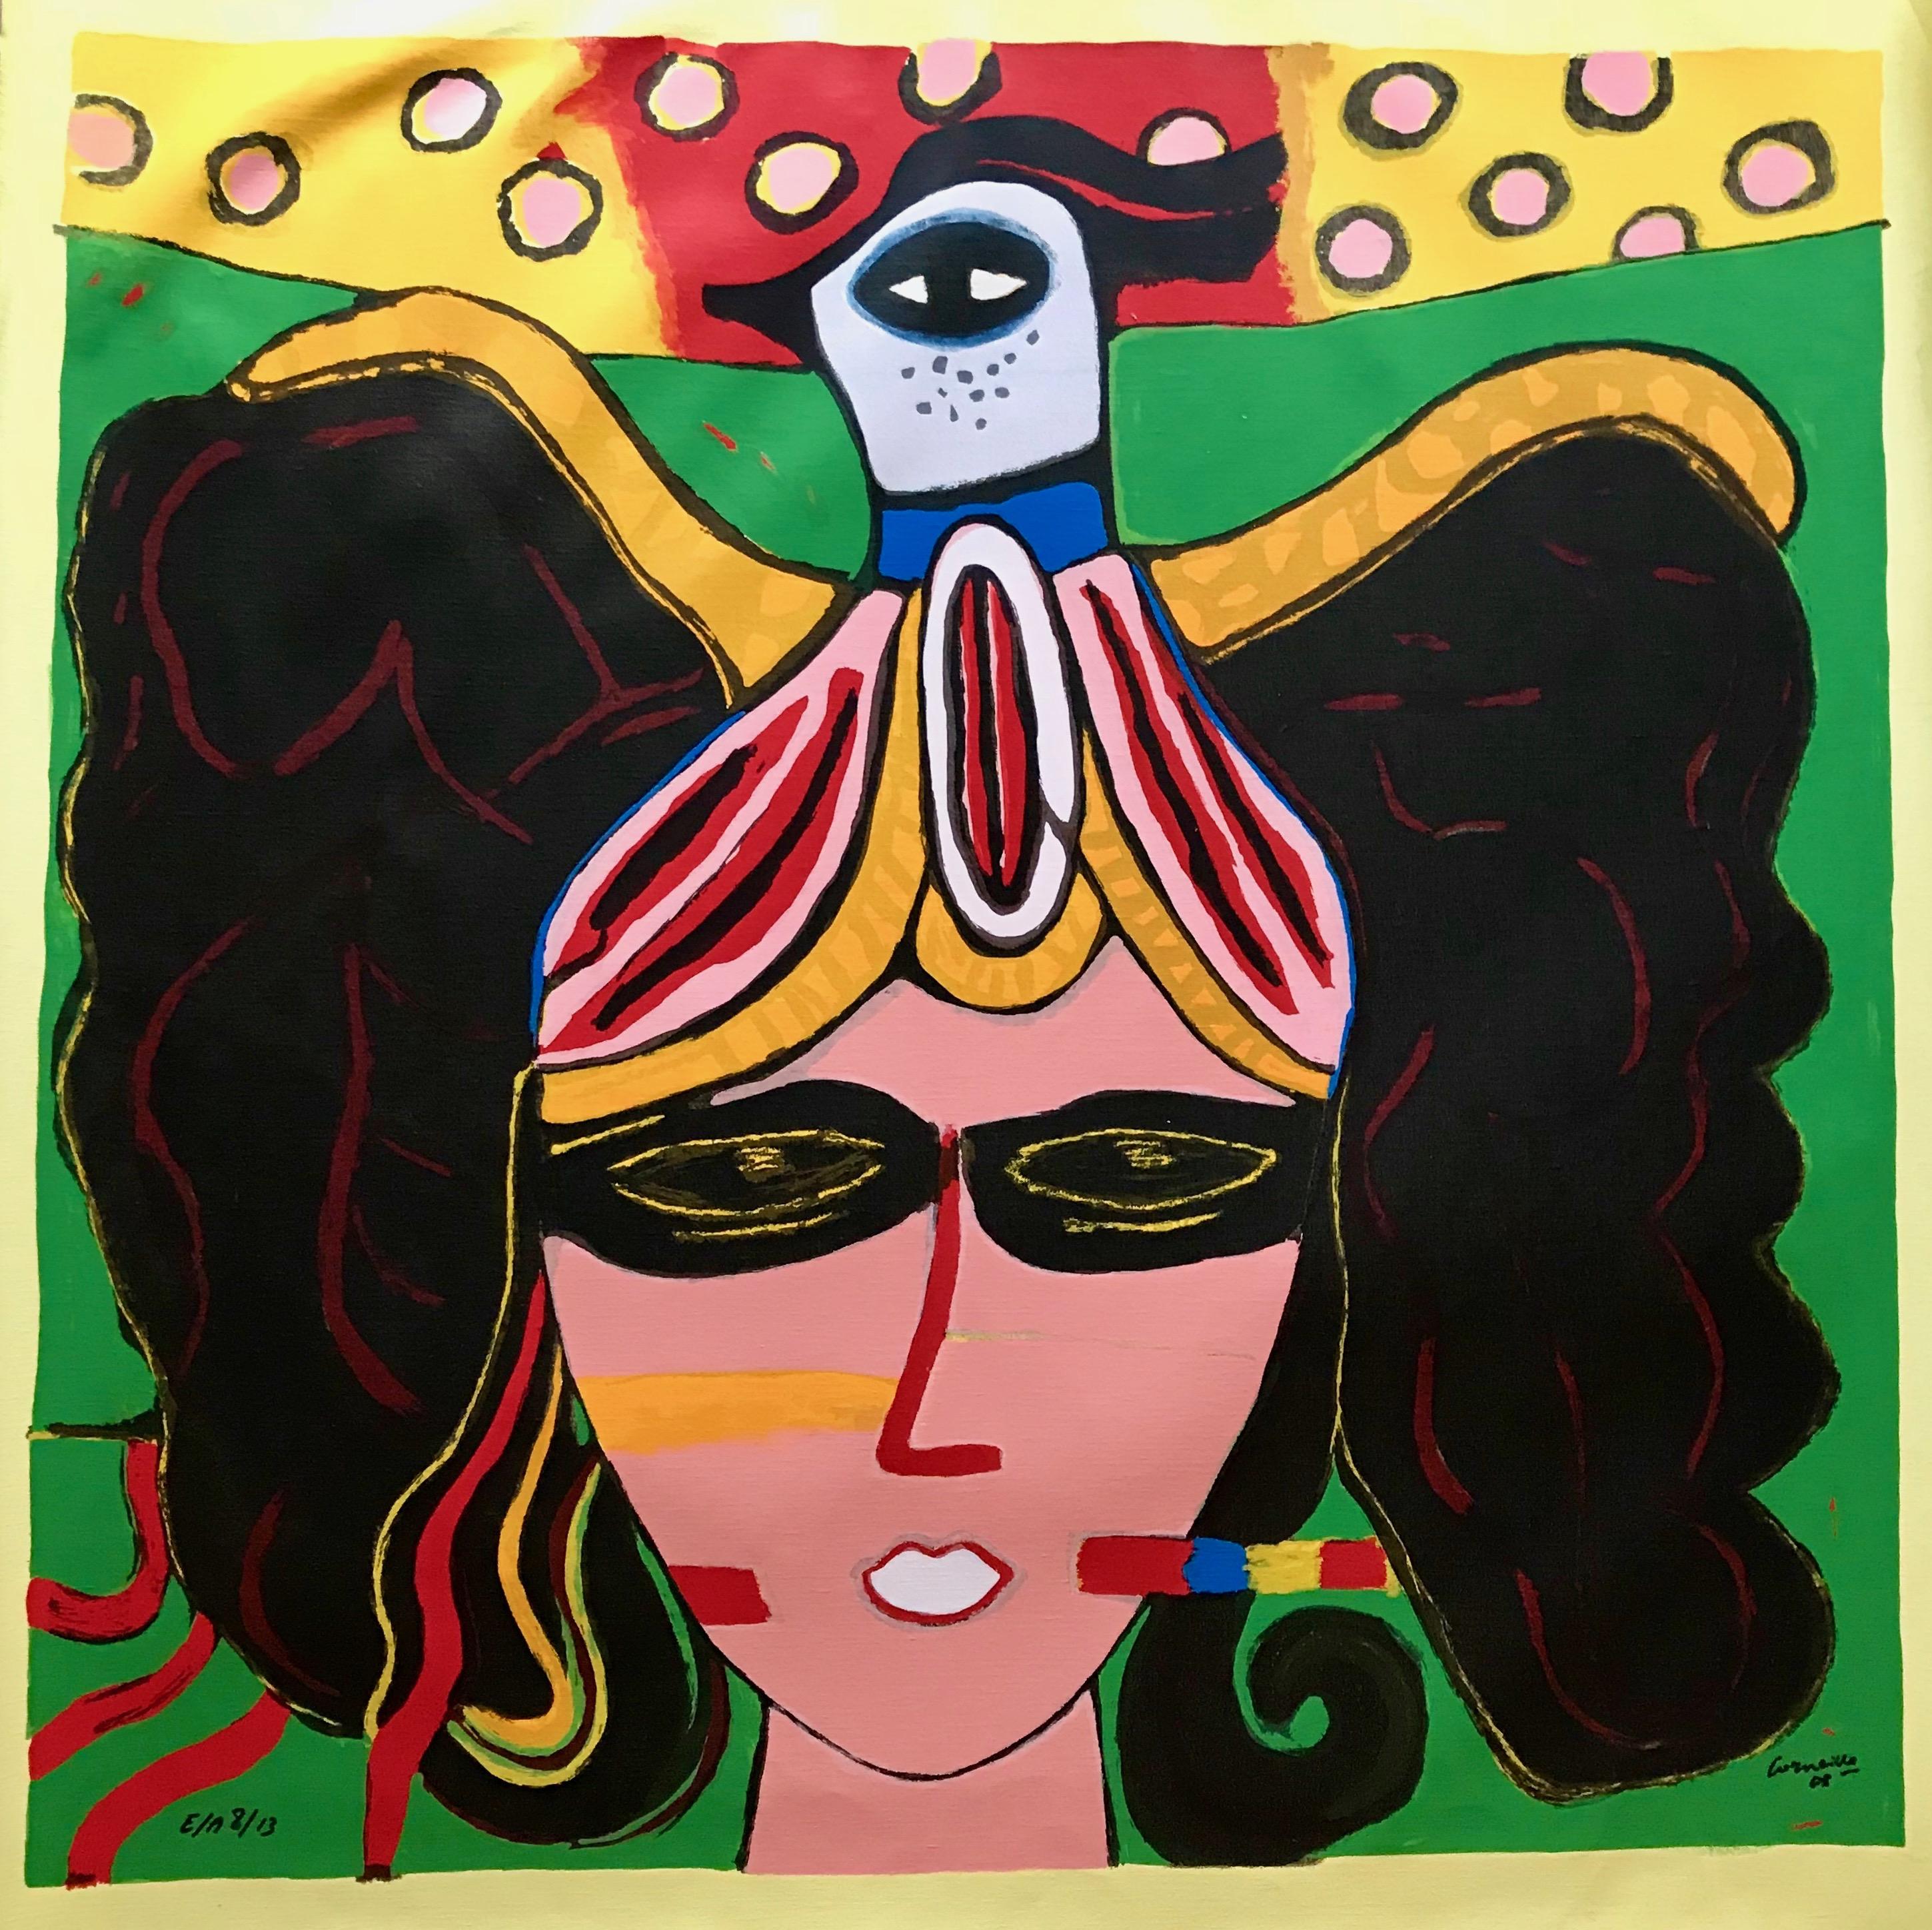 Corneille Abstract Print - La Femme et l'oiseau